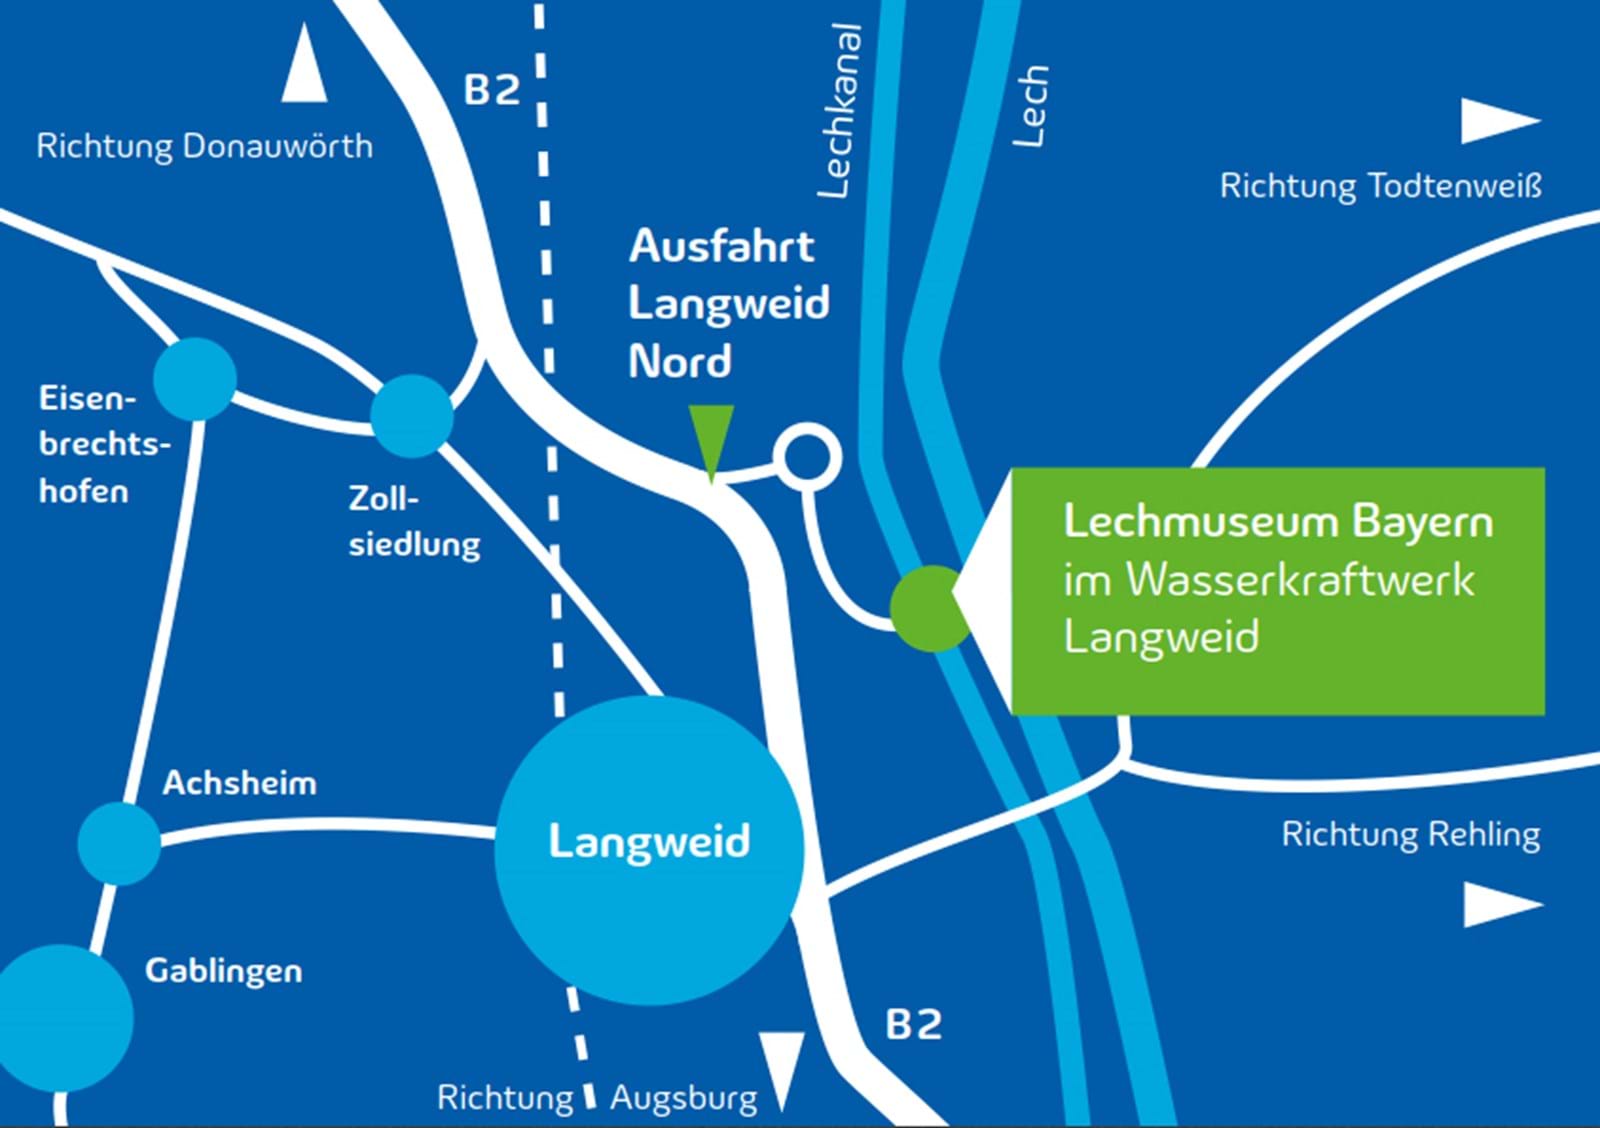 Anfahrtsplan zum Lechmuseum Bayern